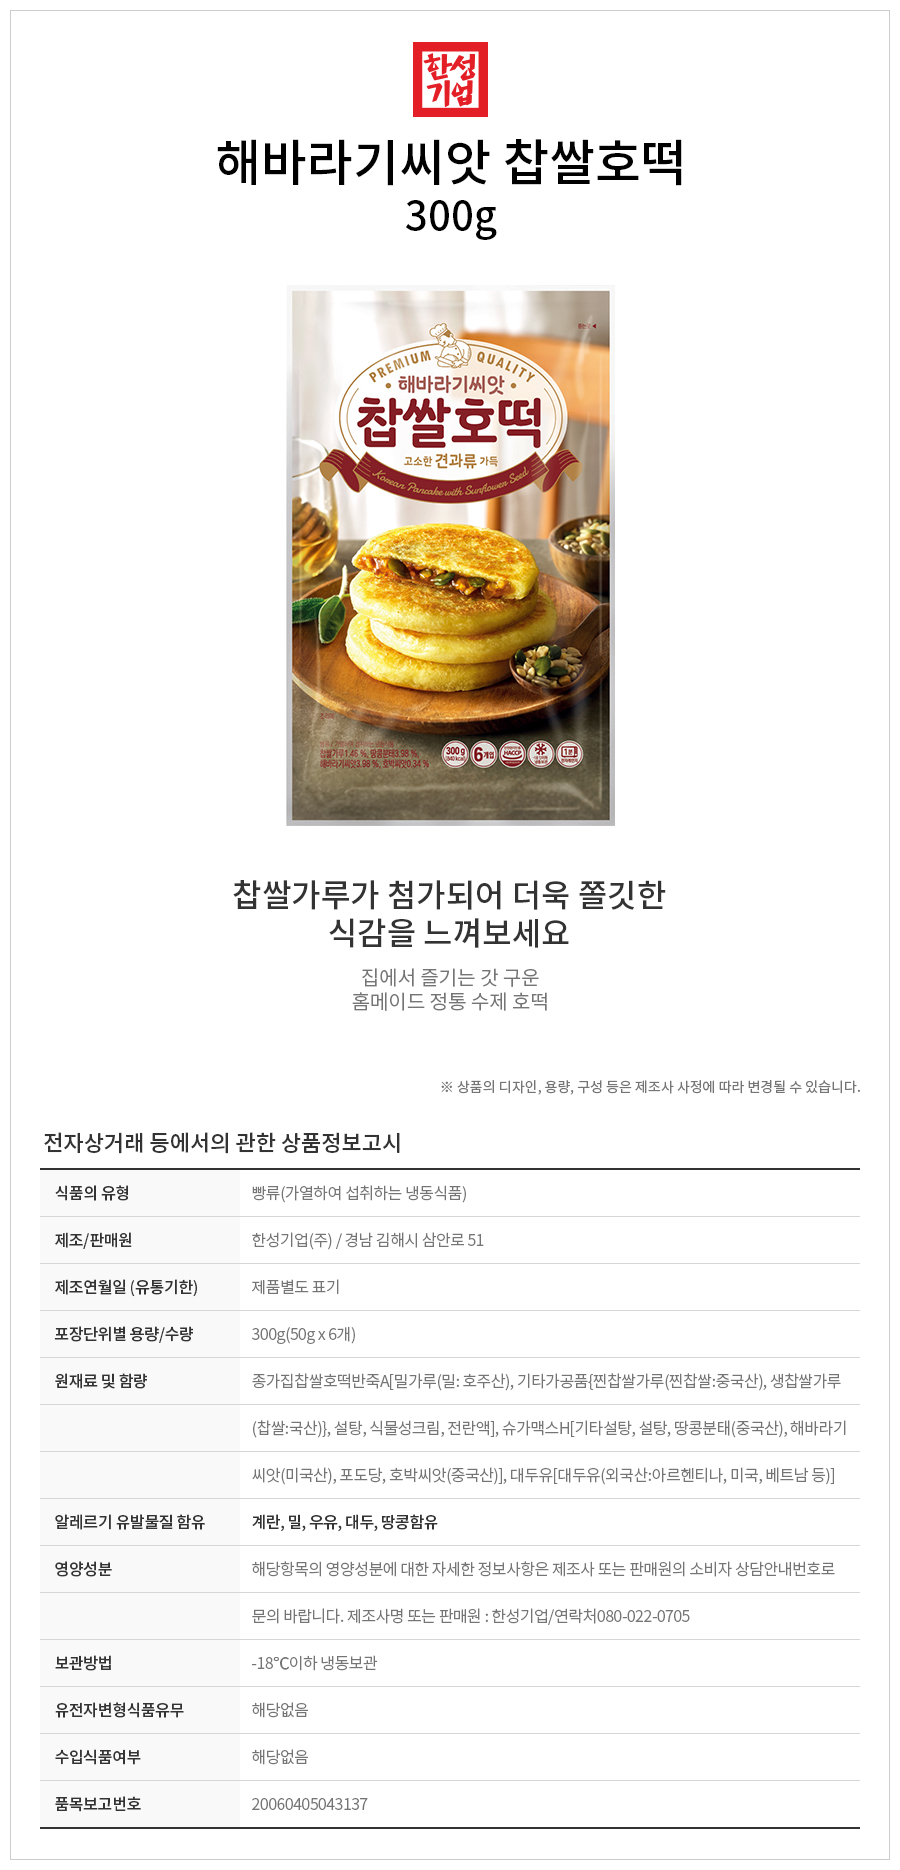 韓國食品-[한성] 해바라기씨앗 찹쌀호떡 300g